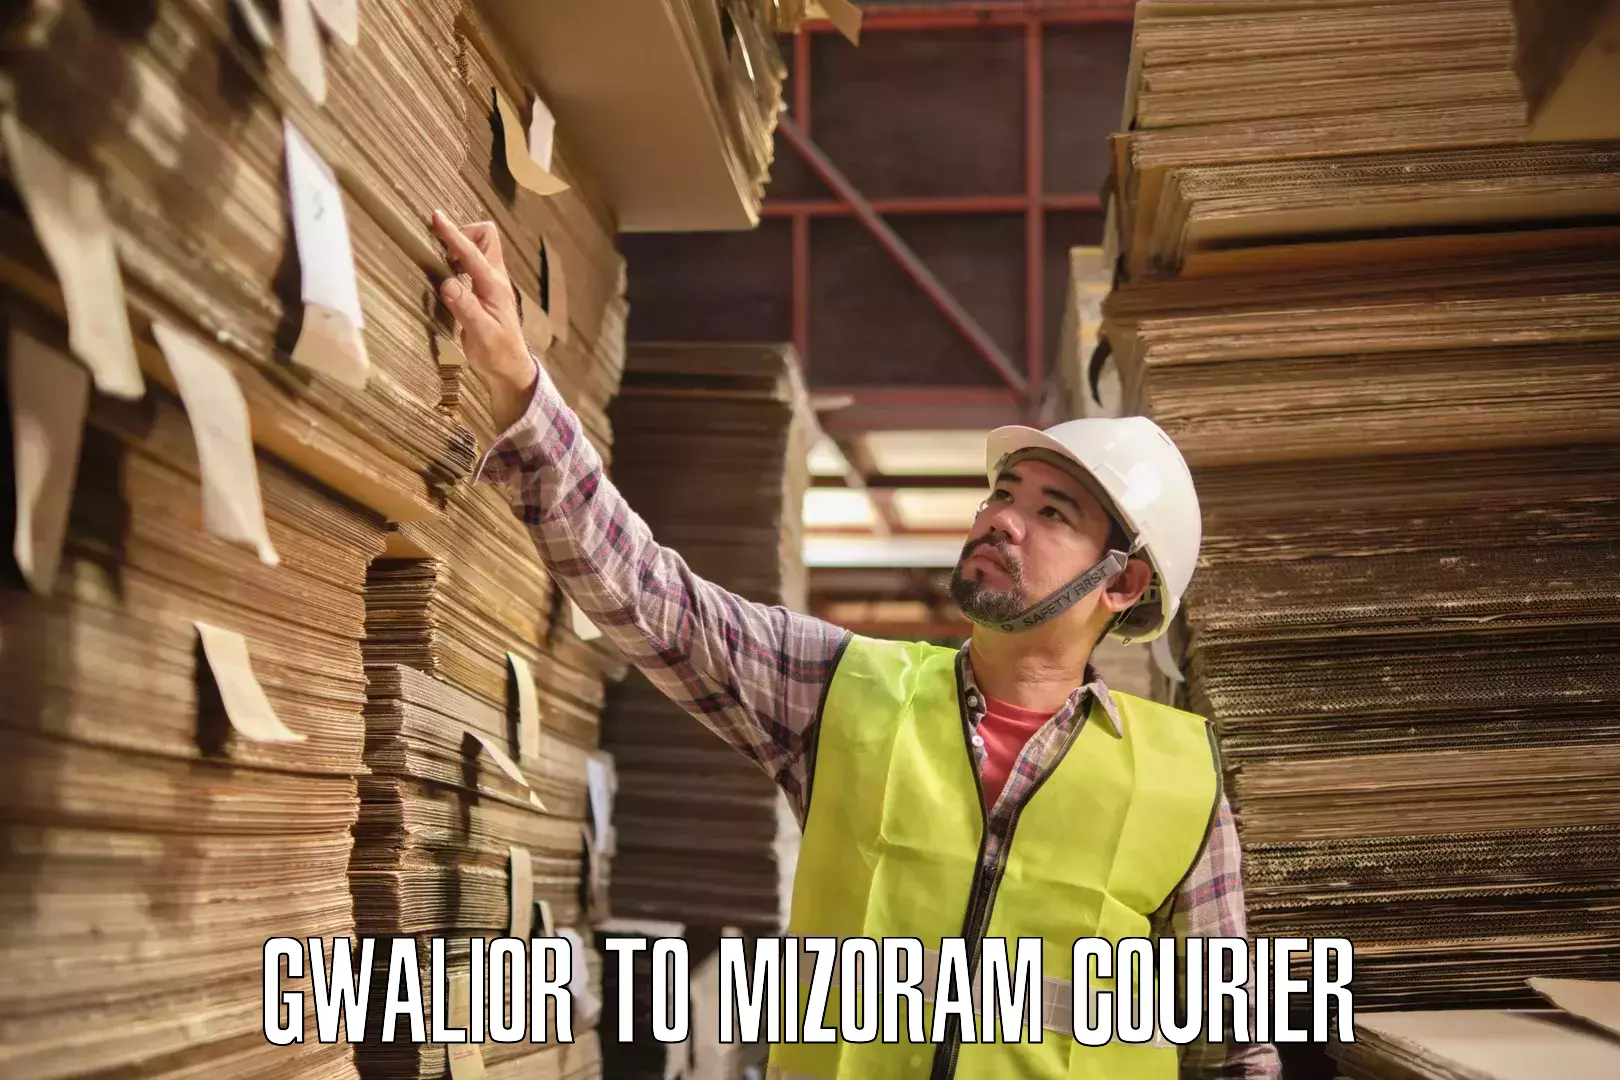 User-friendly courier app Gwalior to Mizoram